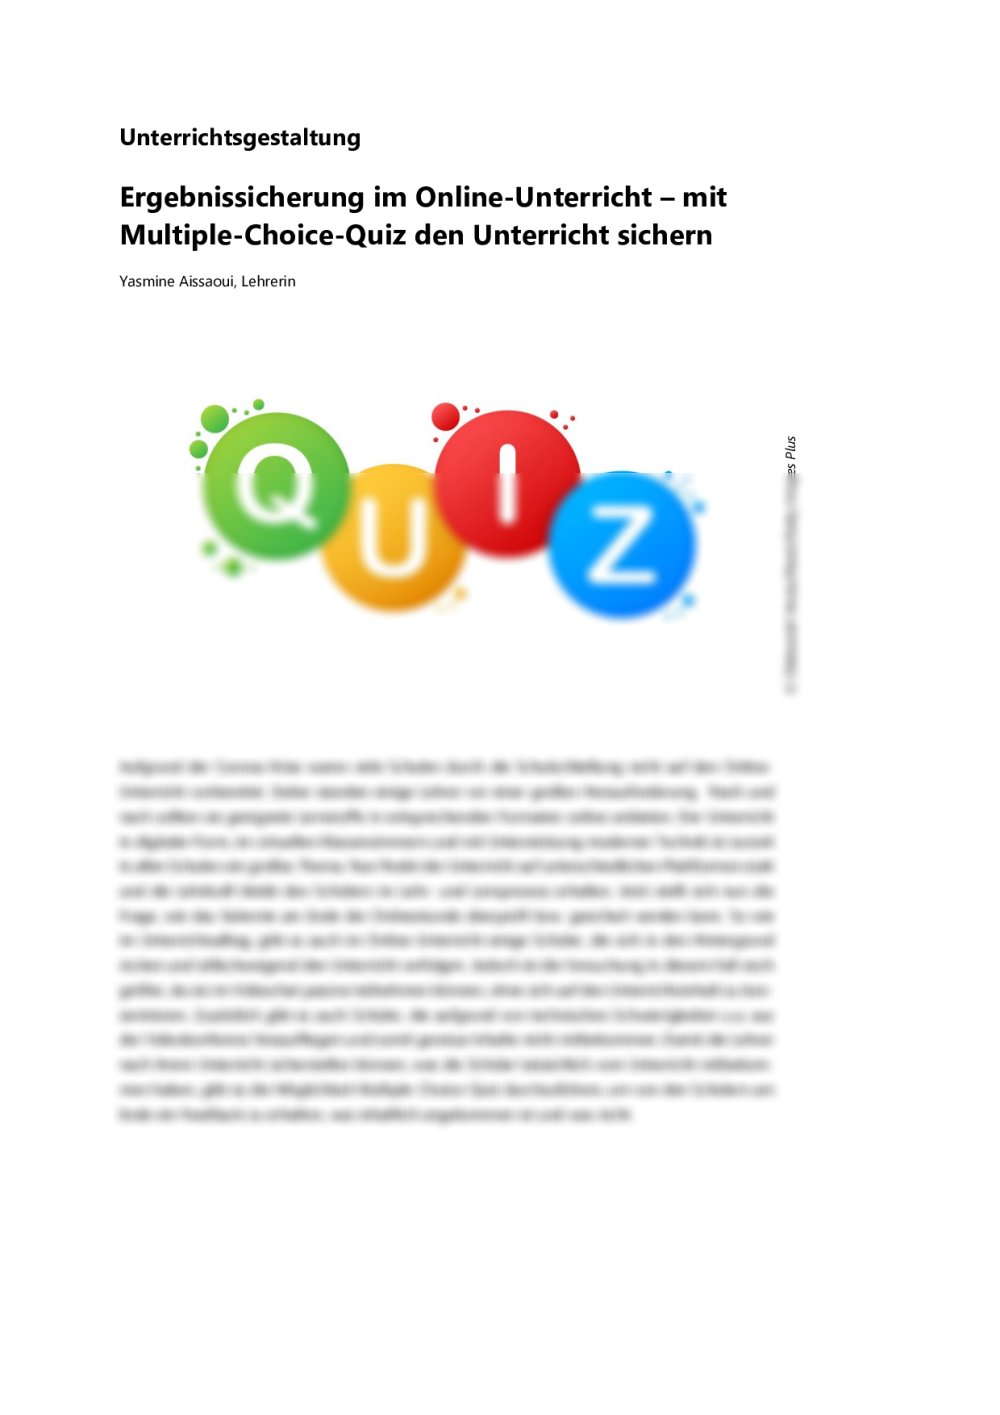 Mit Multiple-Choice-Quiz im Online-Unterricht Ergebnisse sichern - Seite 1